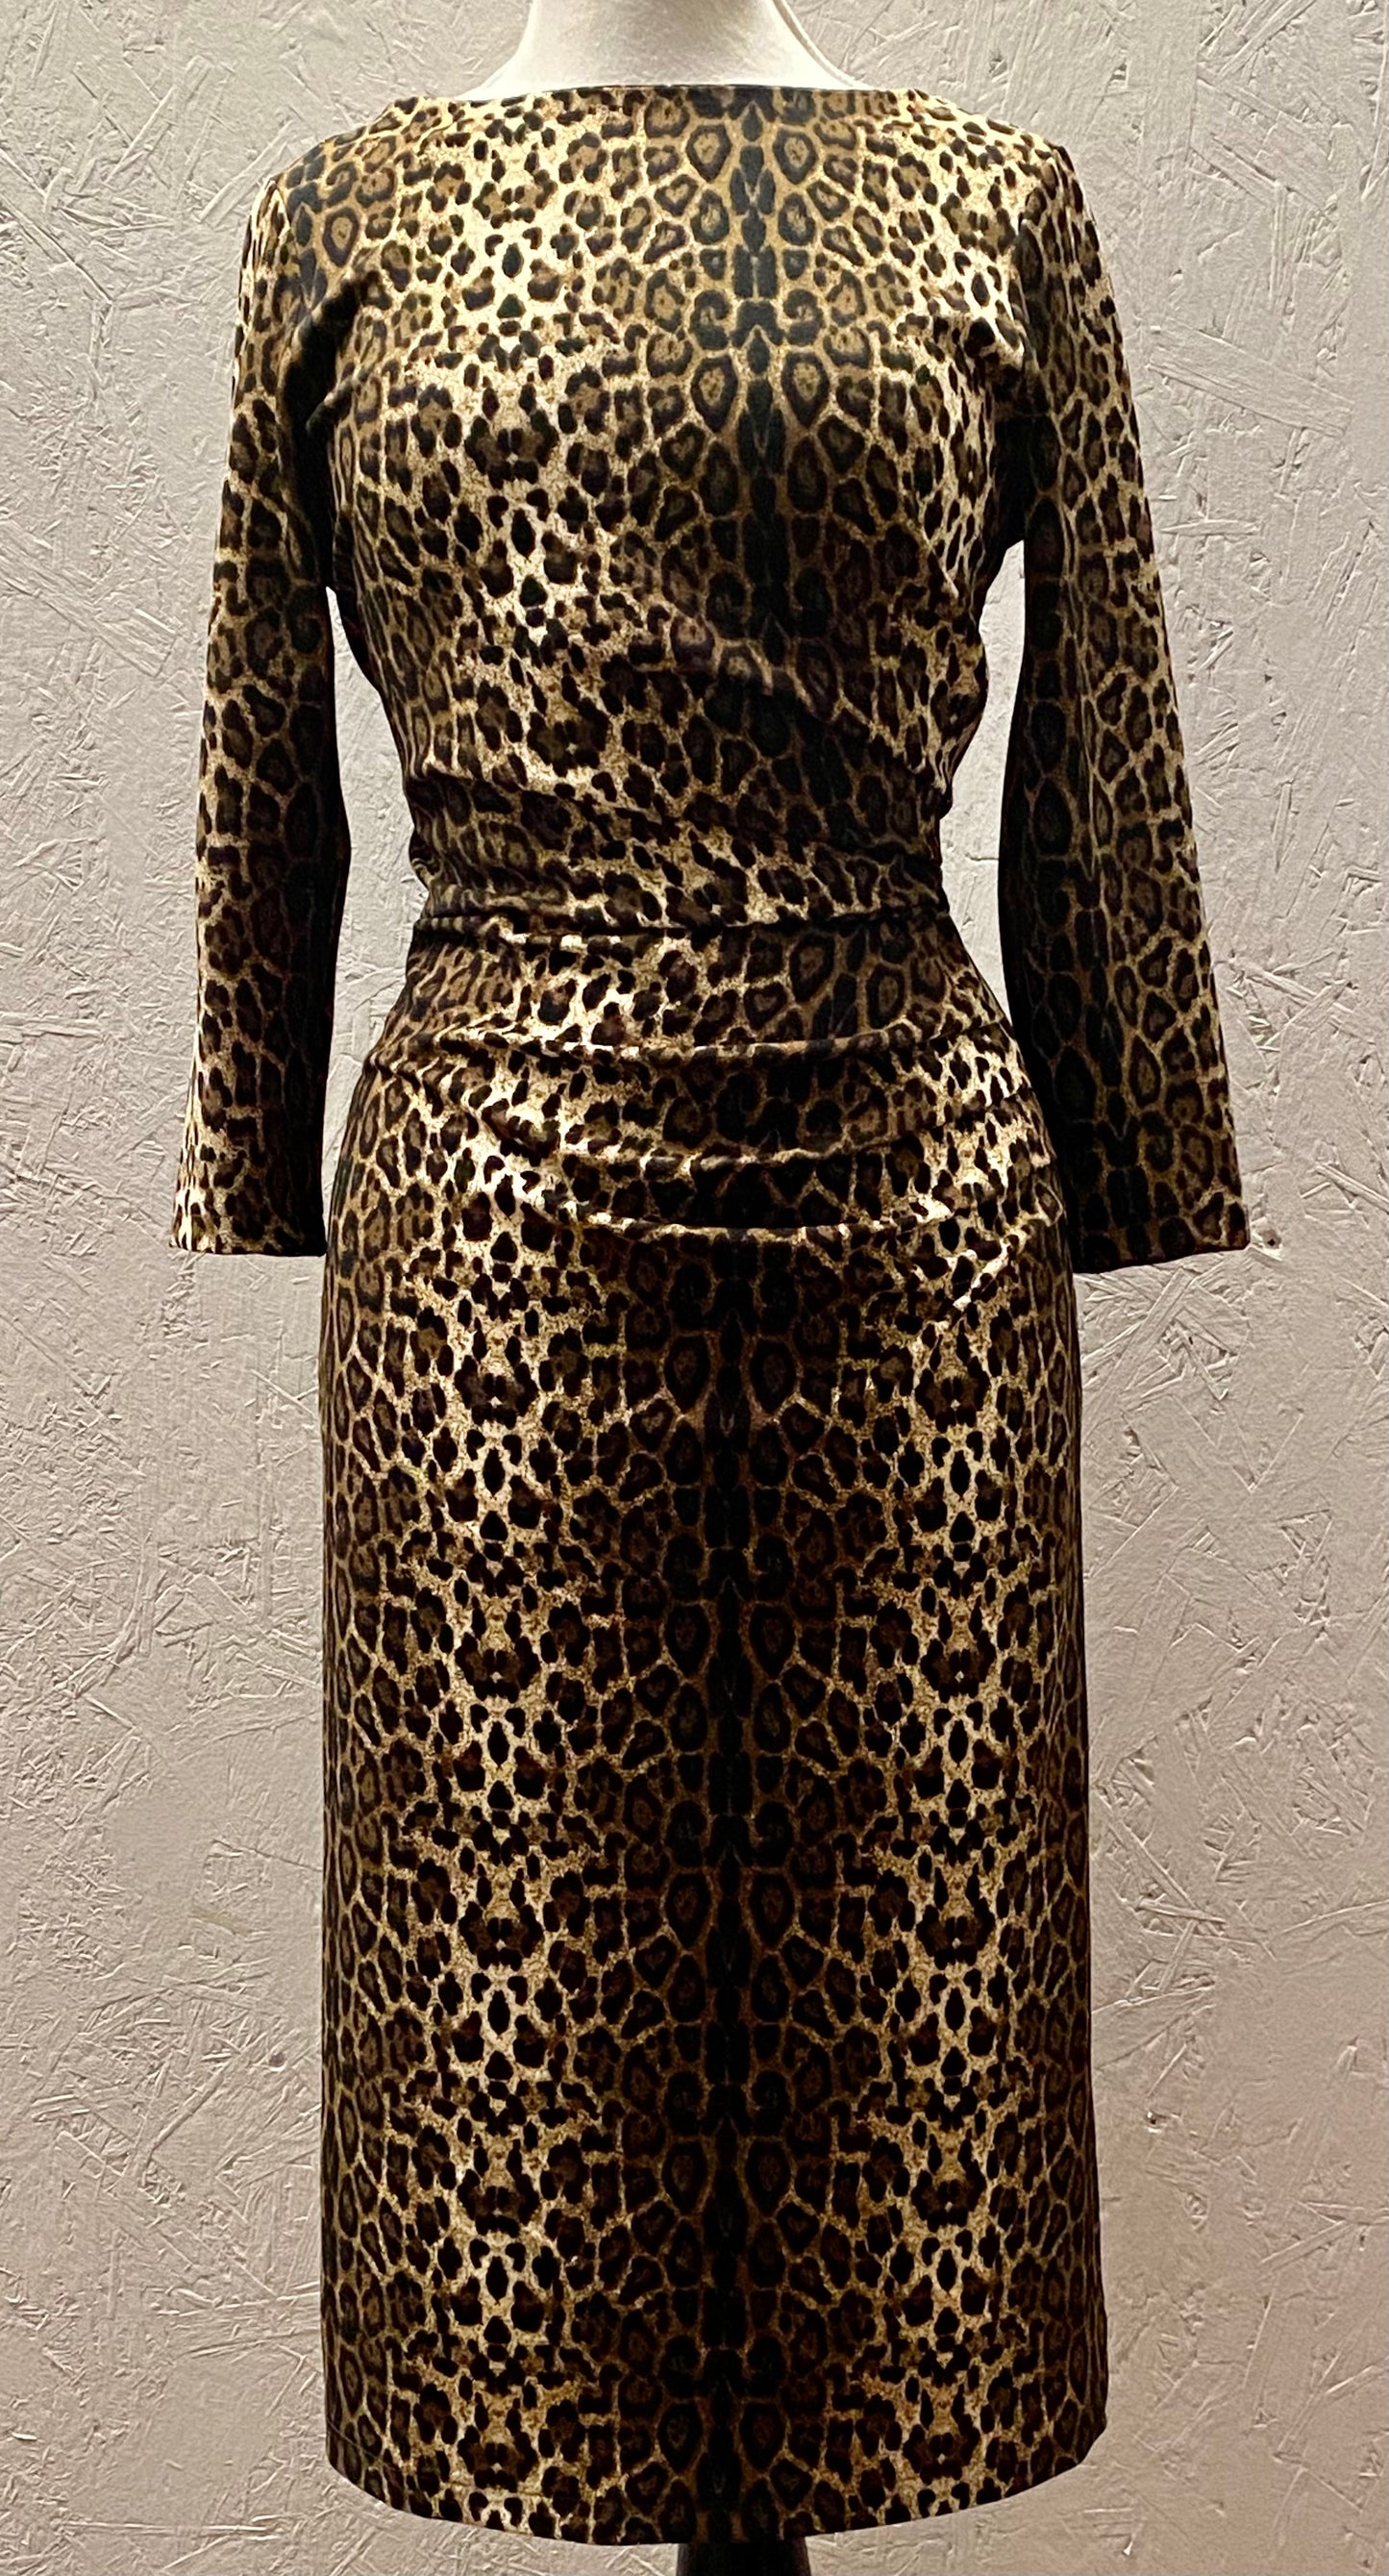 Joan vintage 1950s style wiggle dress in wicked leopard print